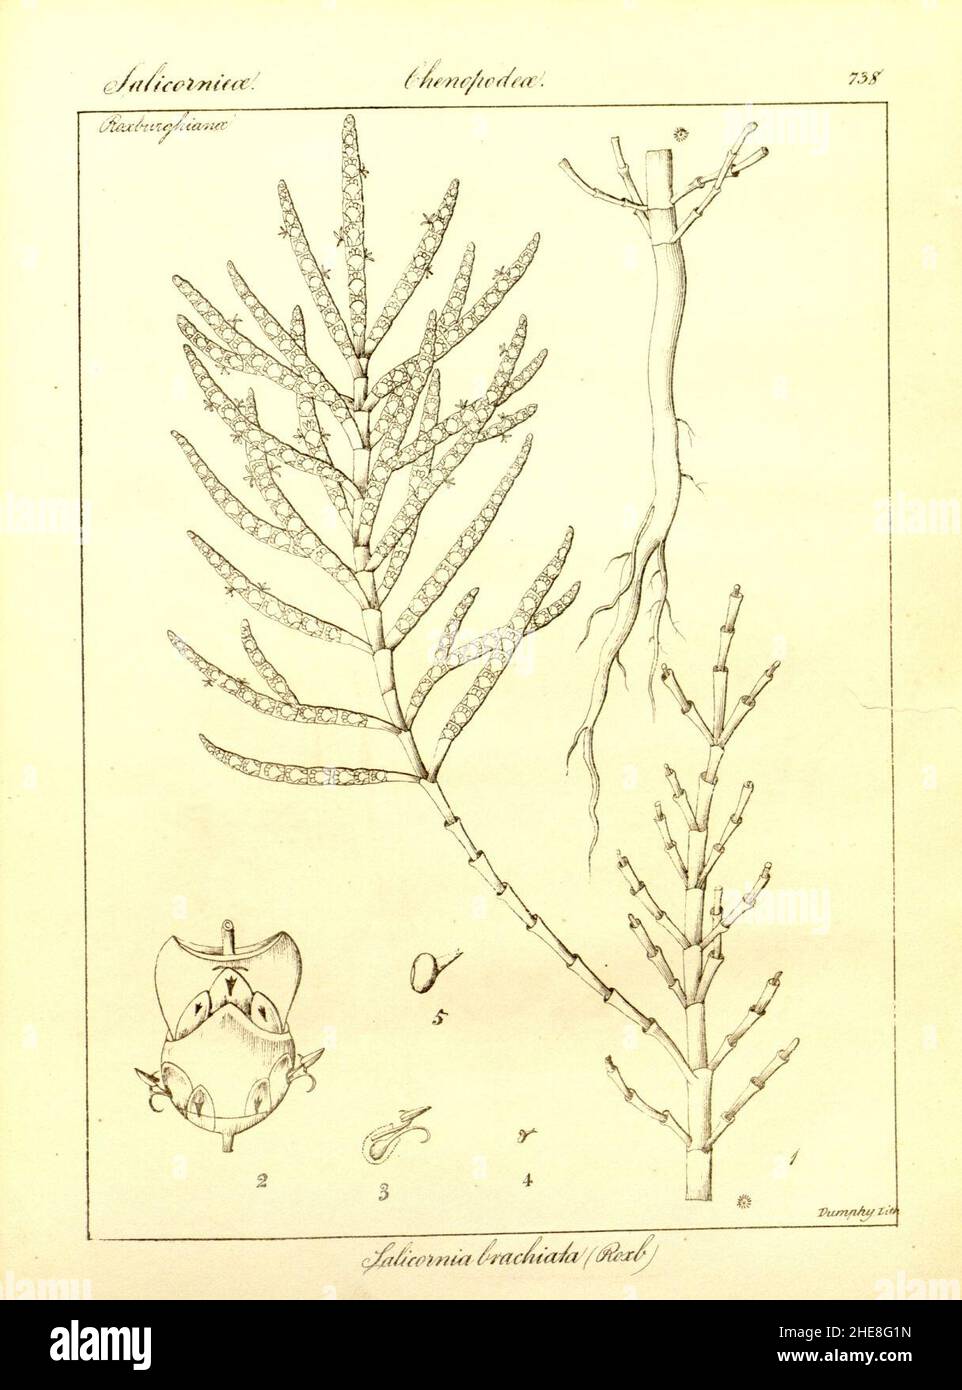 Salicornia brachiata. Stock Photo